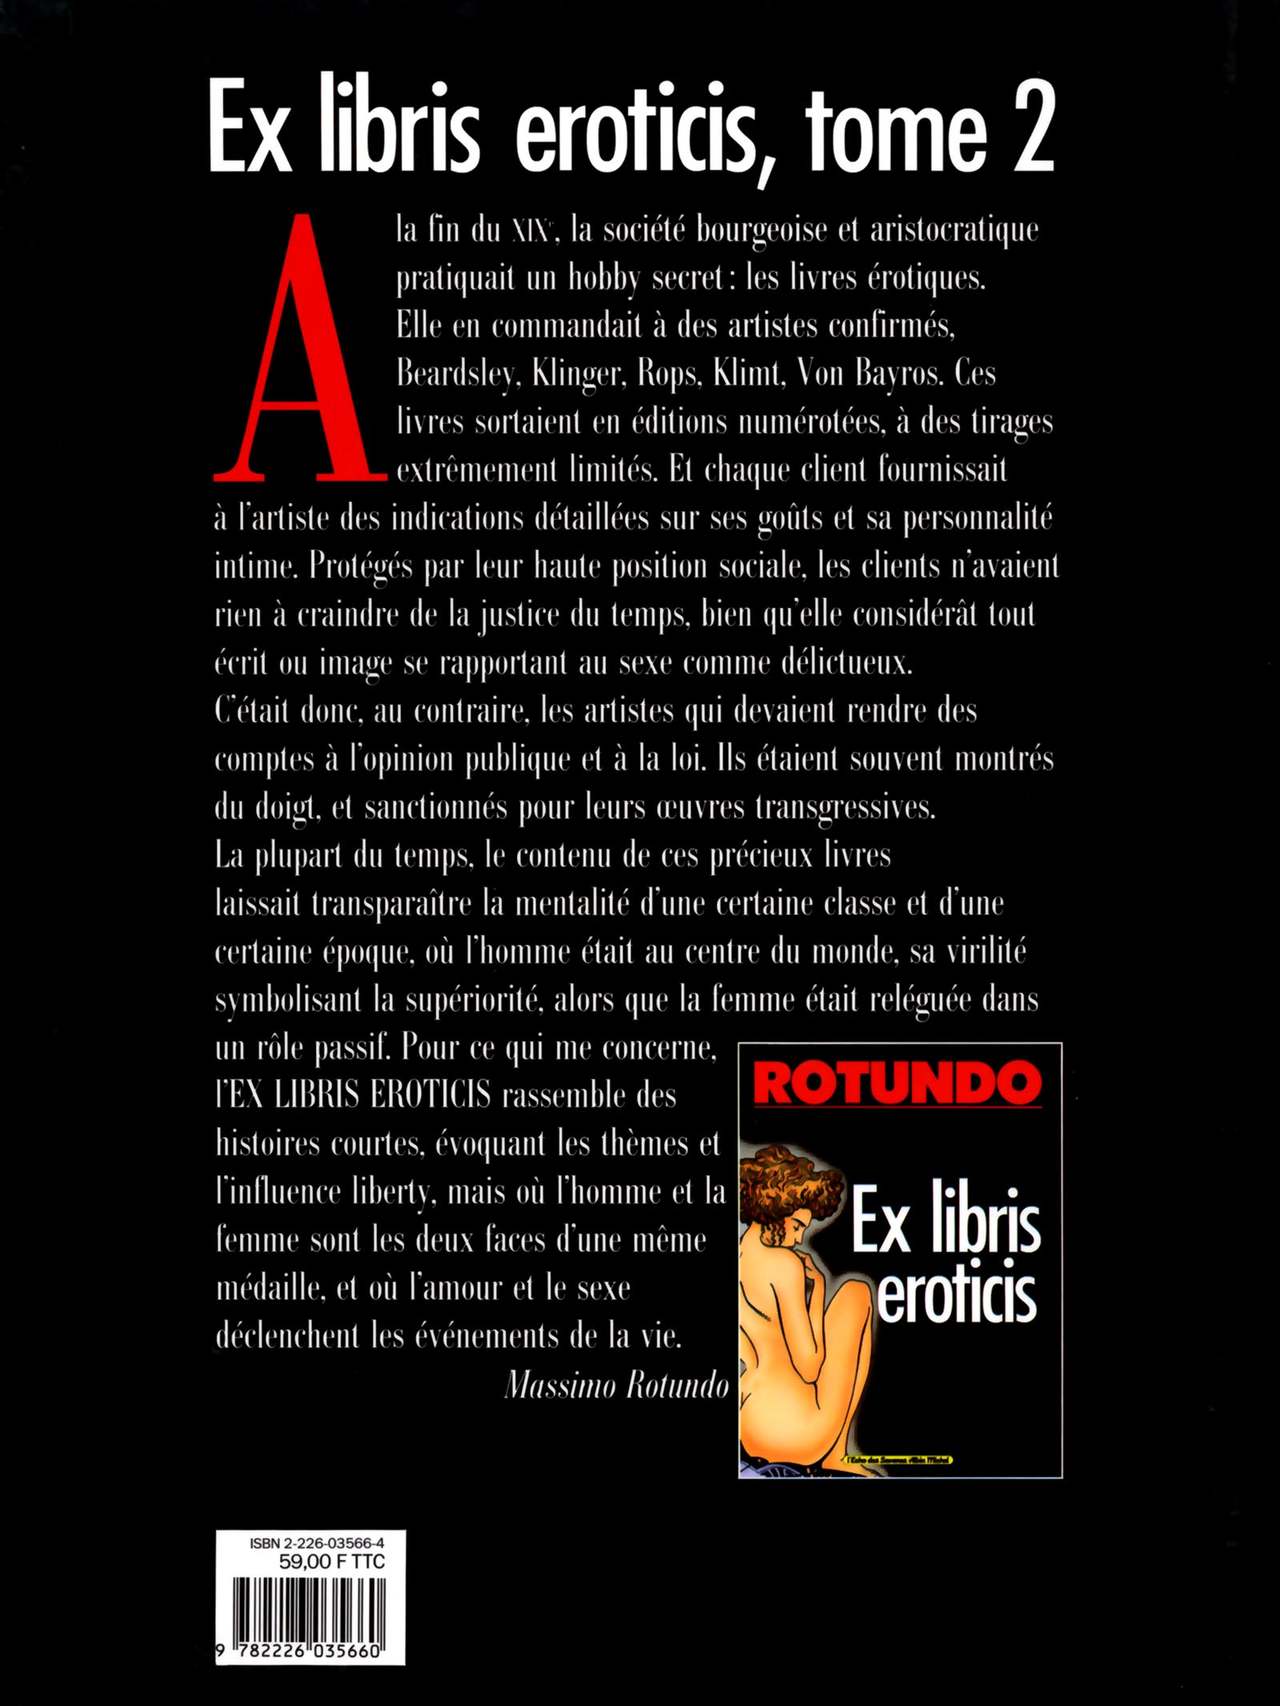 Ex Libris Eroticis 02 numero d'image 53